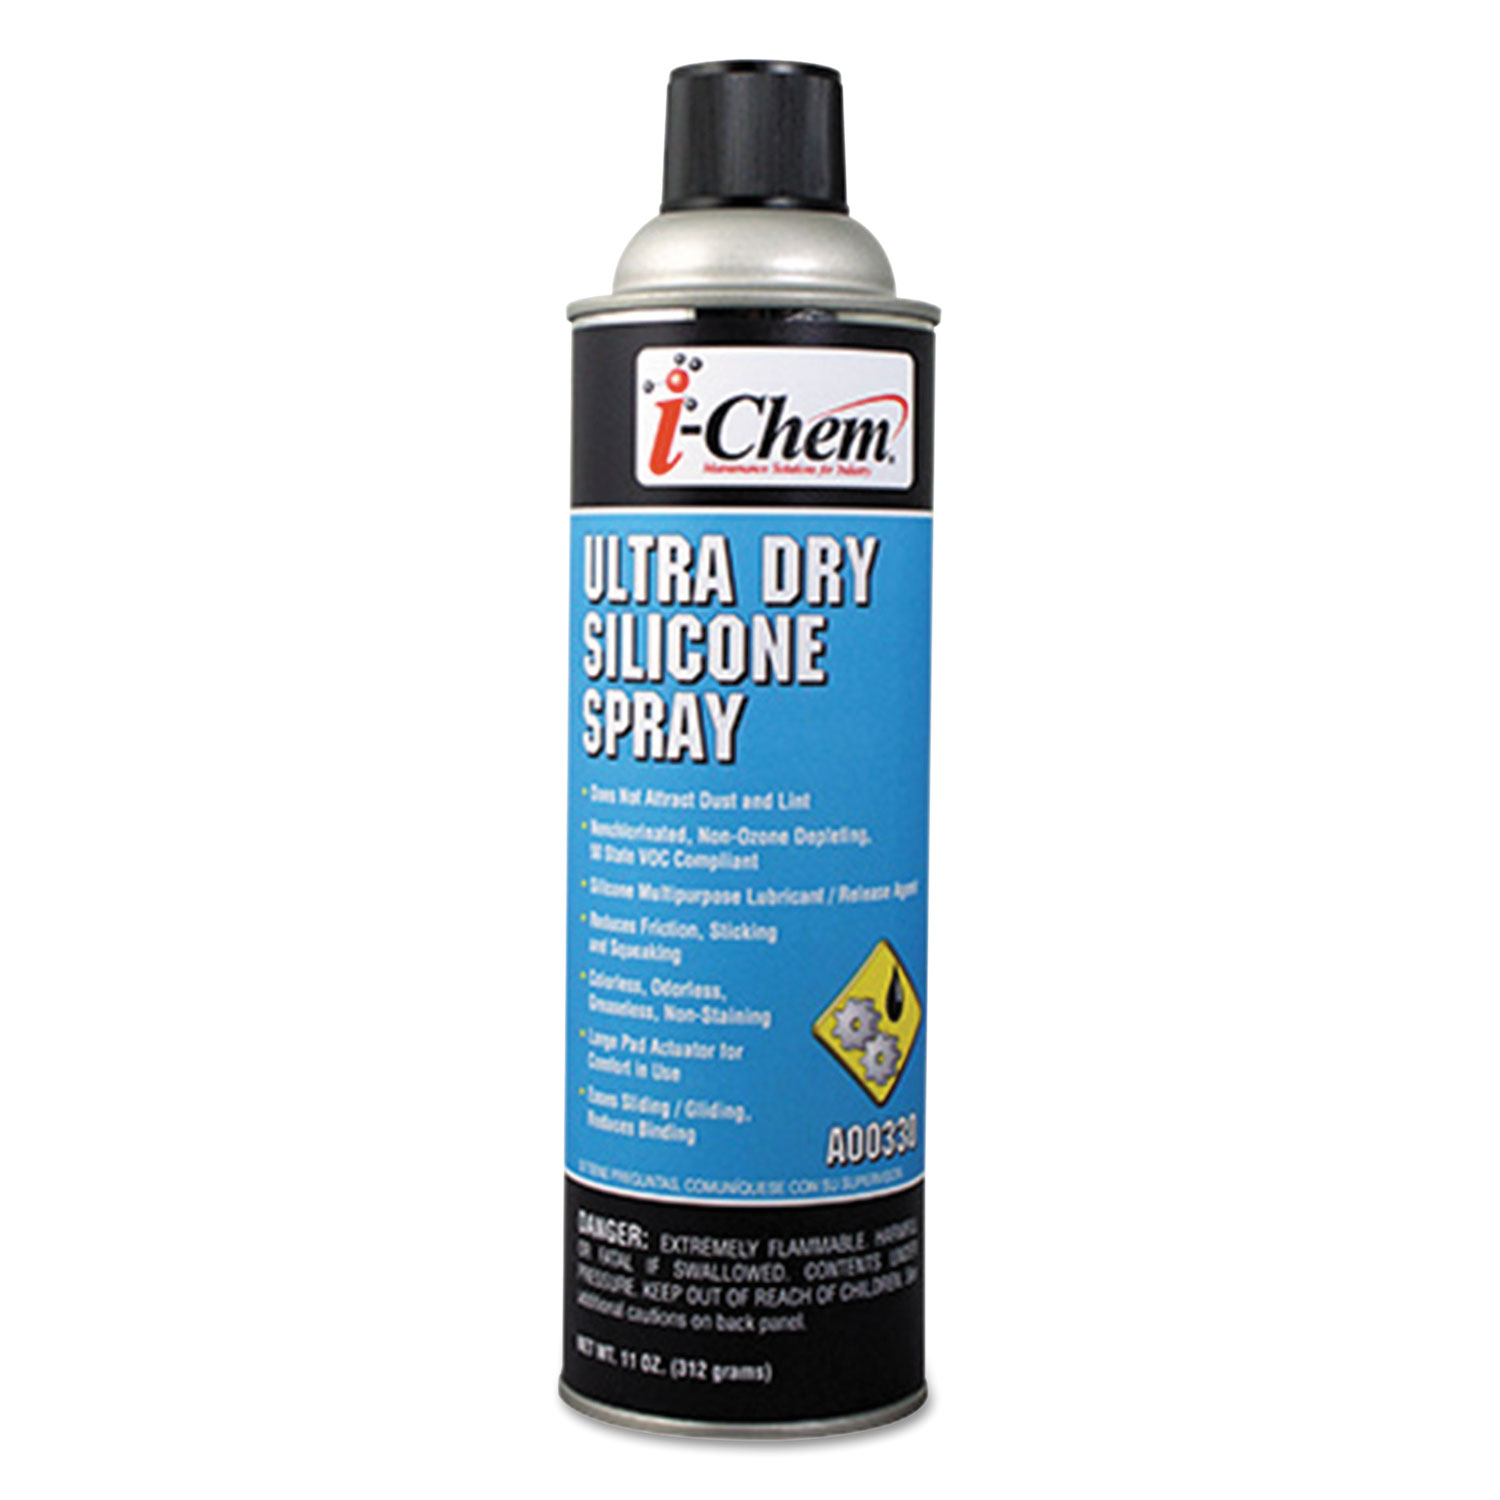 Ultra Dry Silicone Spray, 11 oz Aerosol Can, 12/Carton